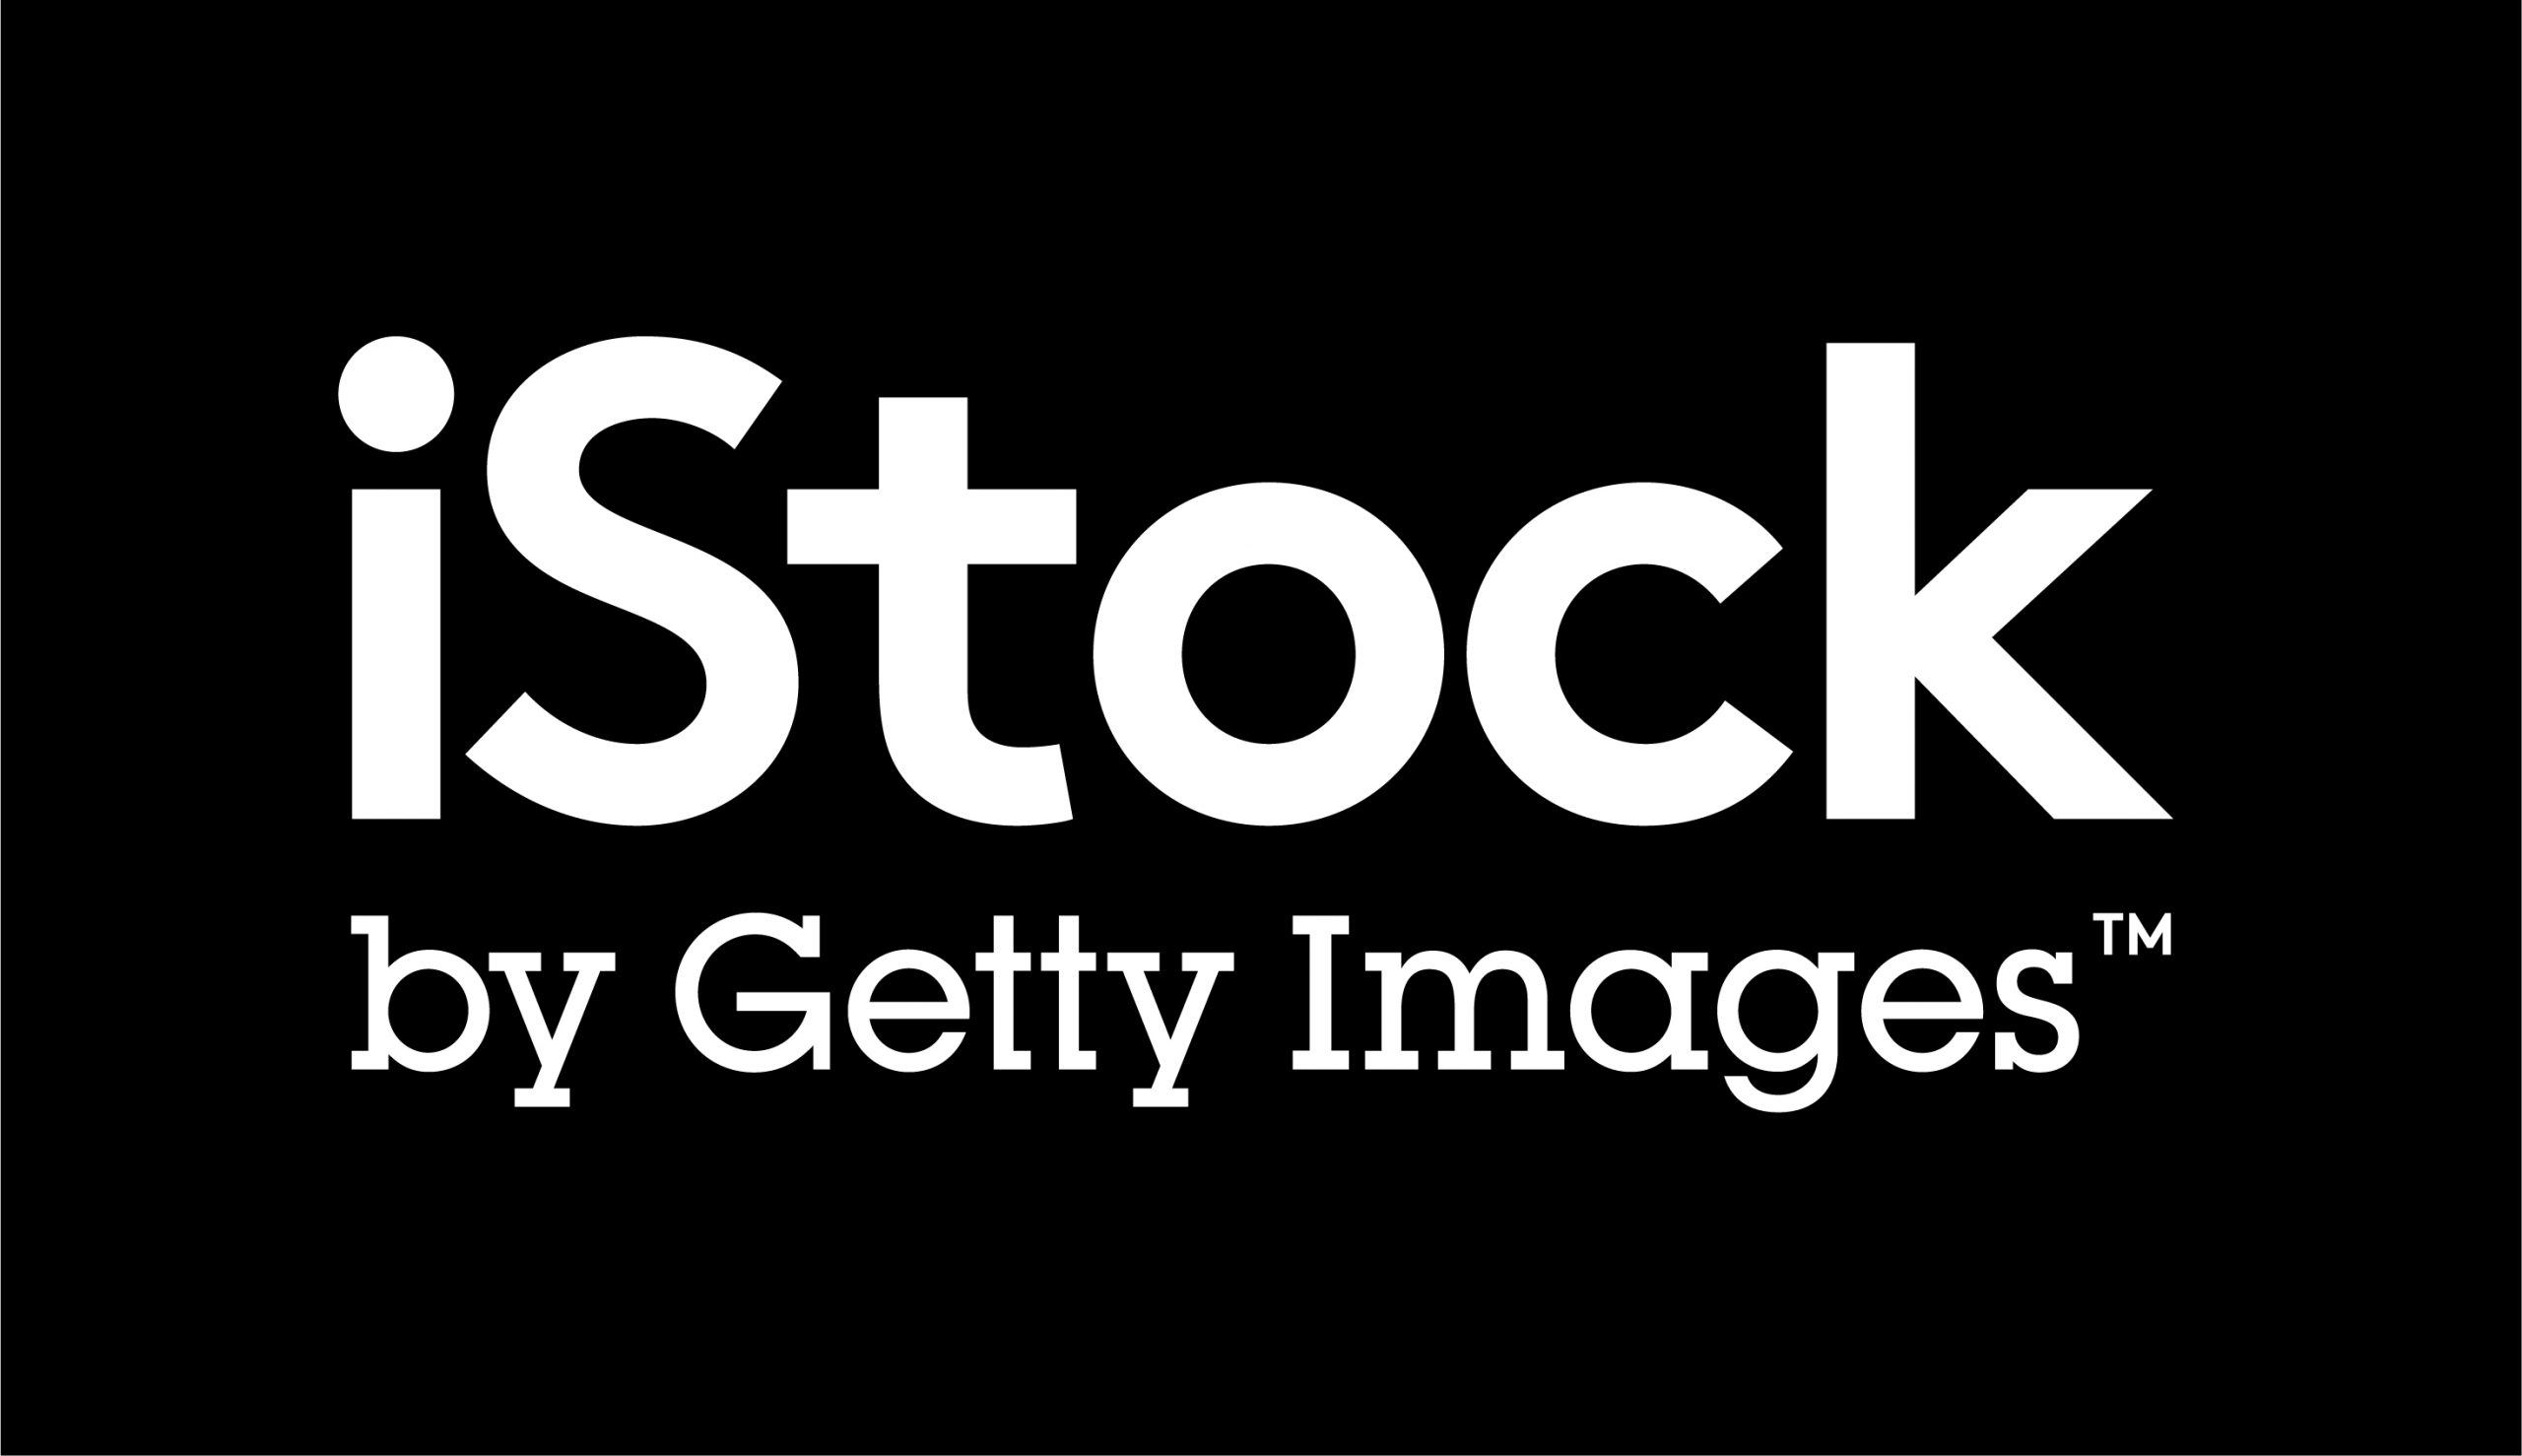 Understanding iStock Getty Images